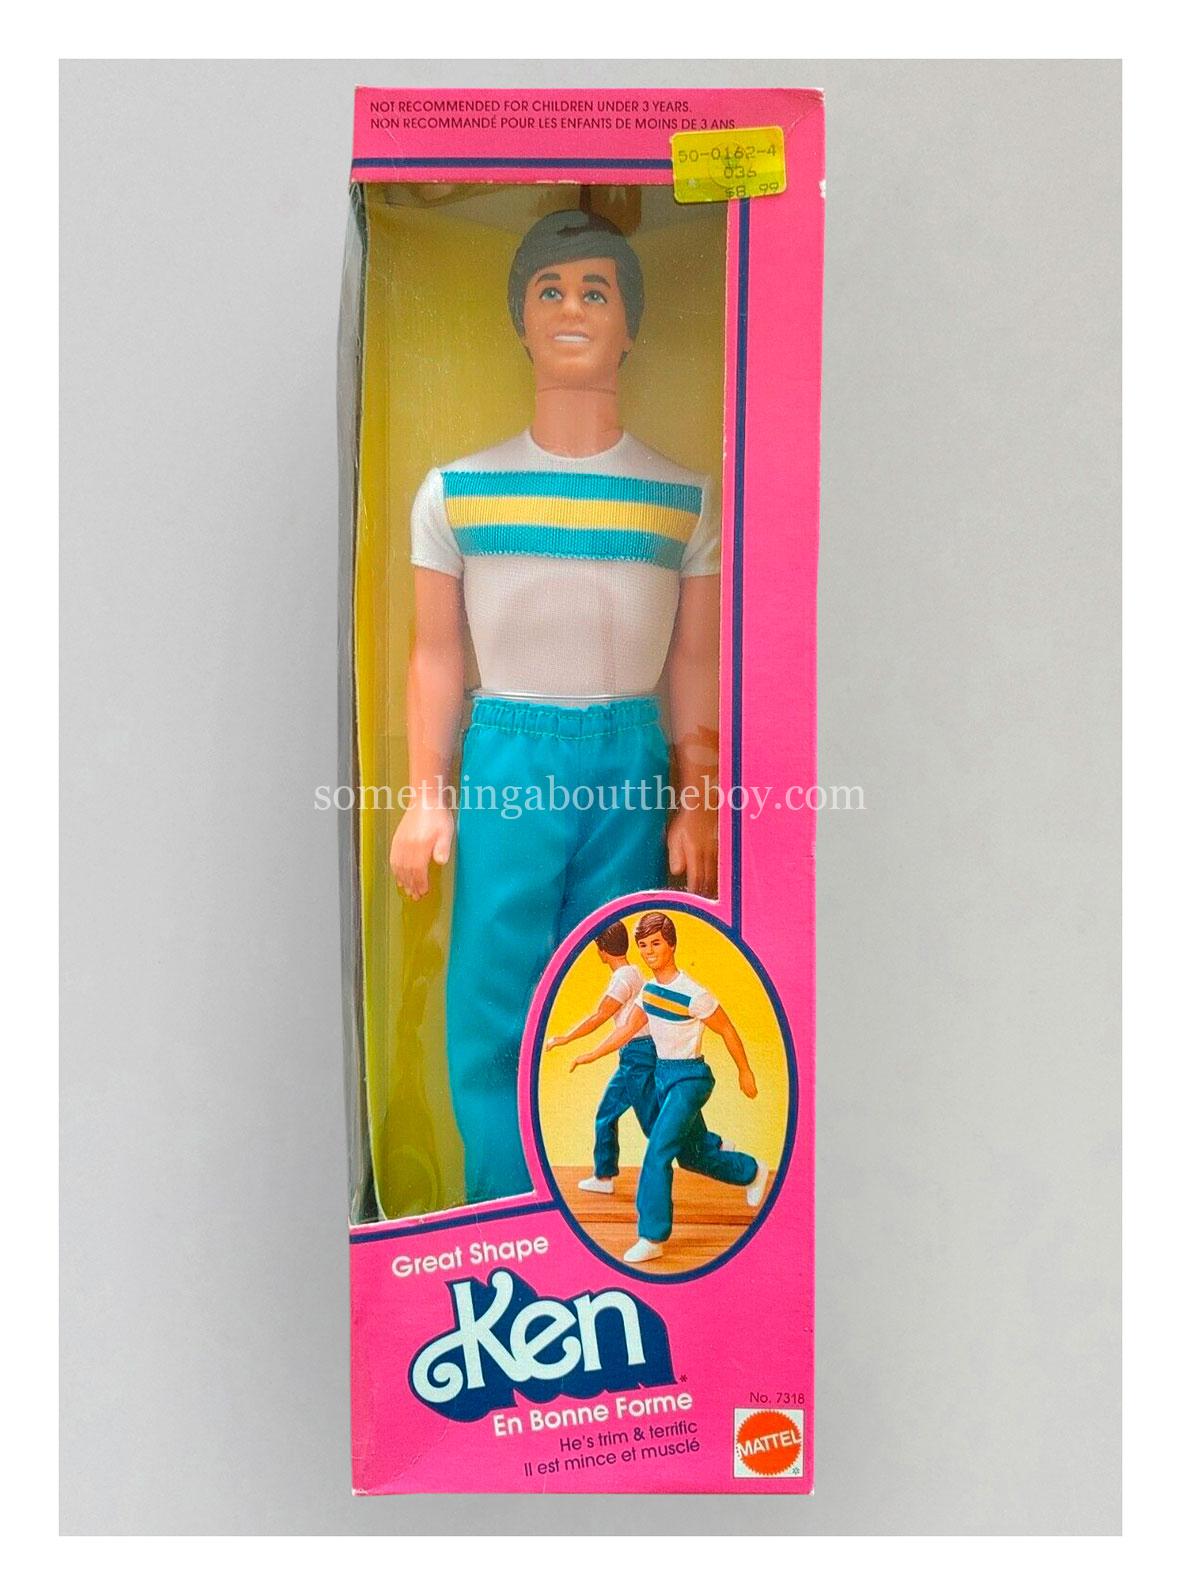 1984 #7318 Great Shape Ken in Canadian packaging